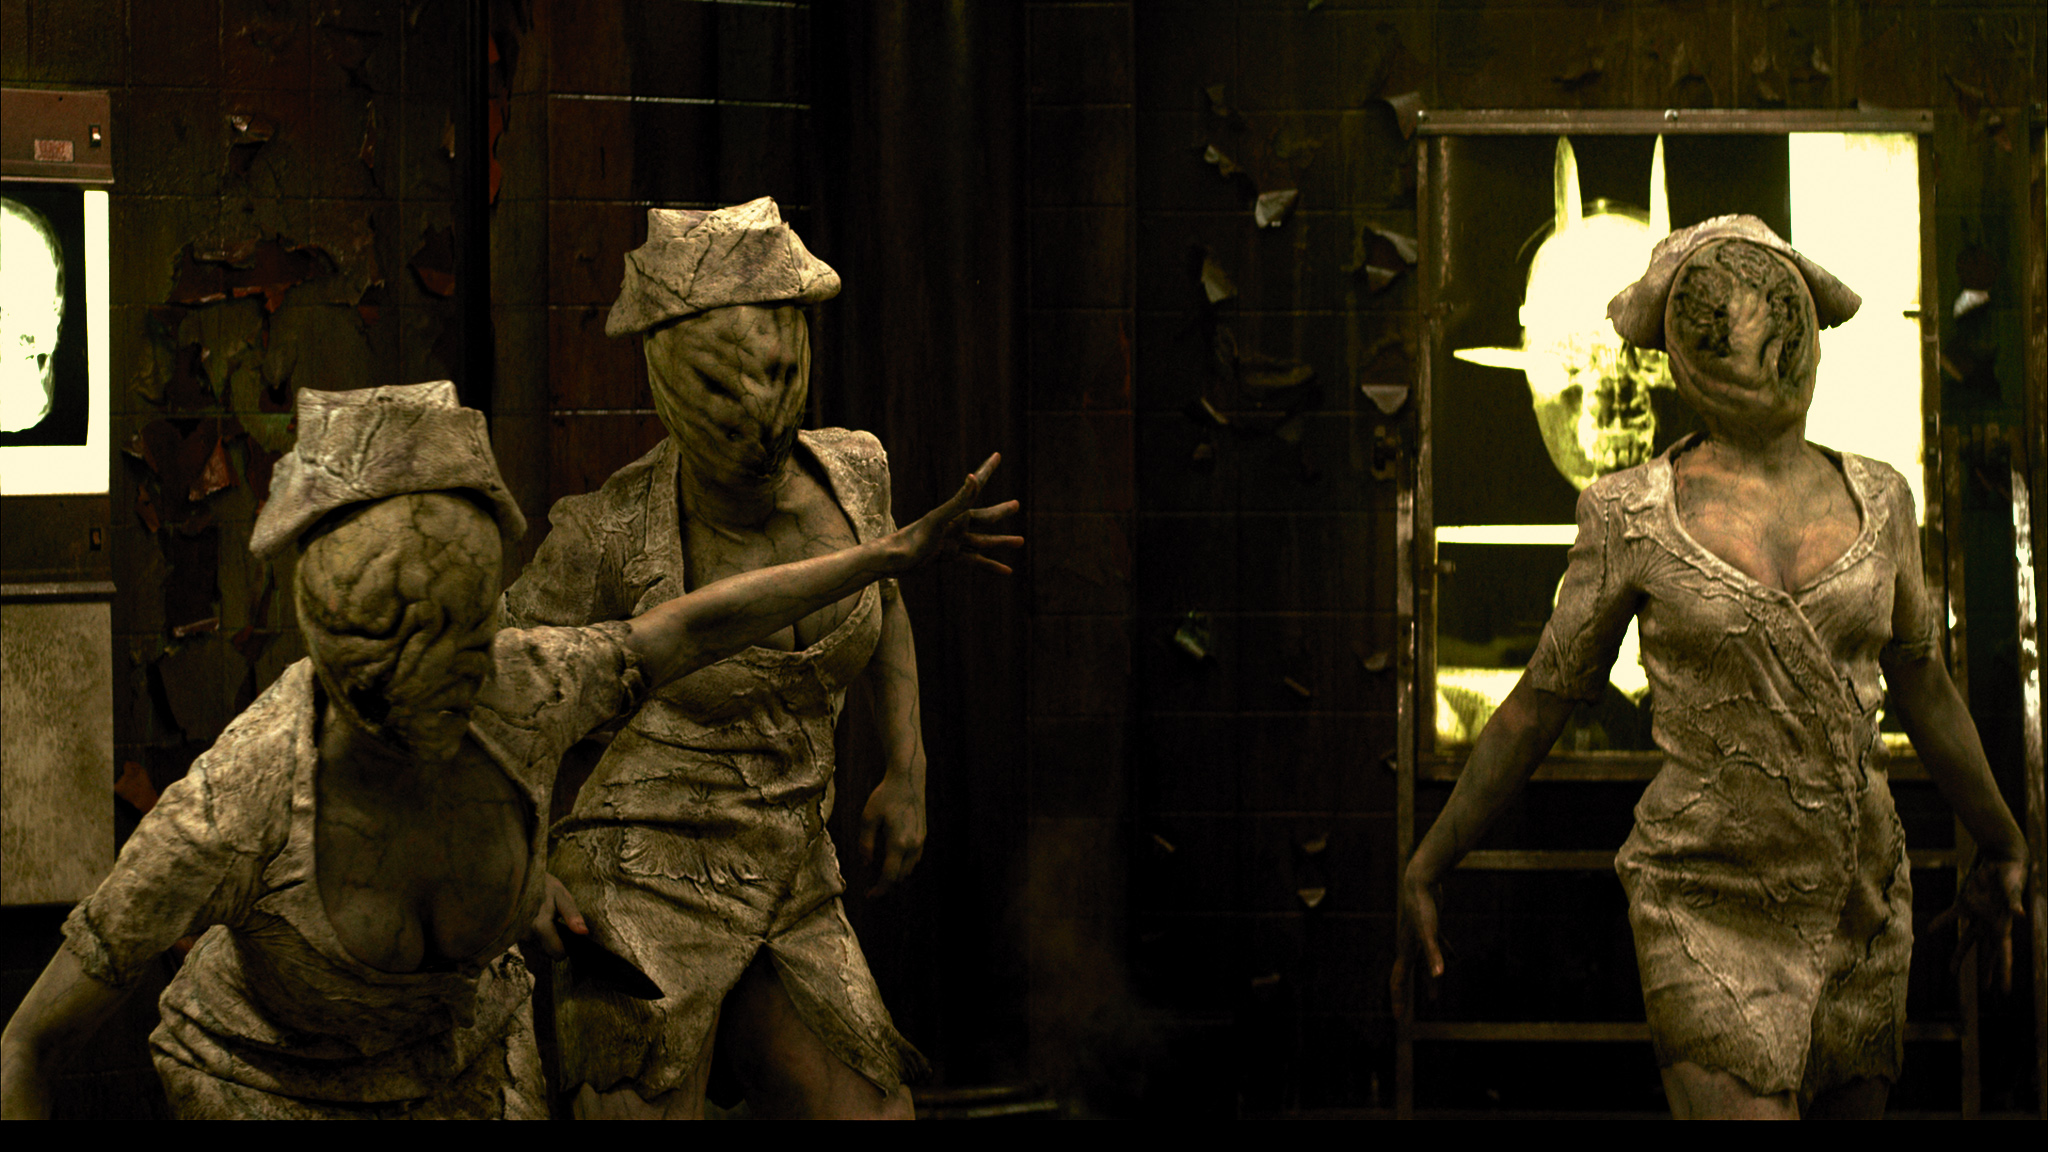 Silent Hill: Revelation HD wallpapers, Desktop wallpaper - most viewed